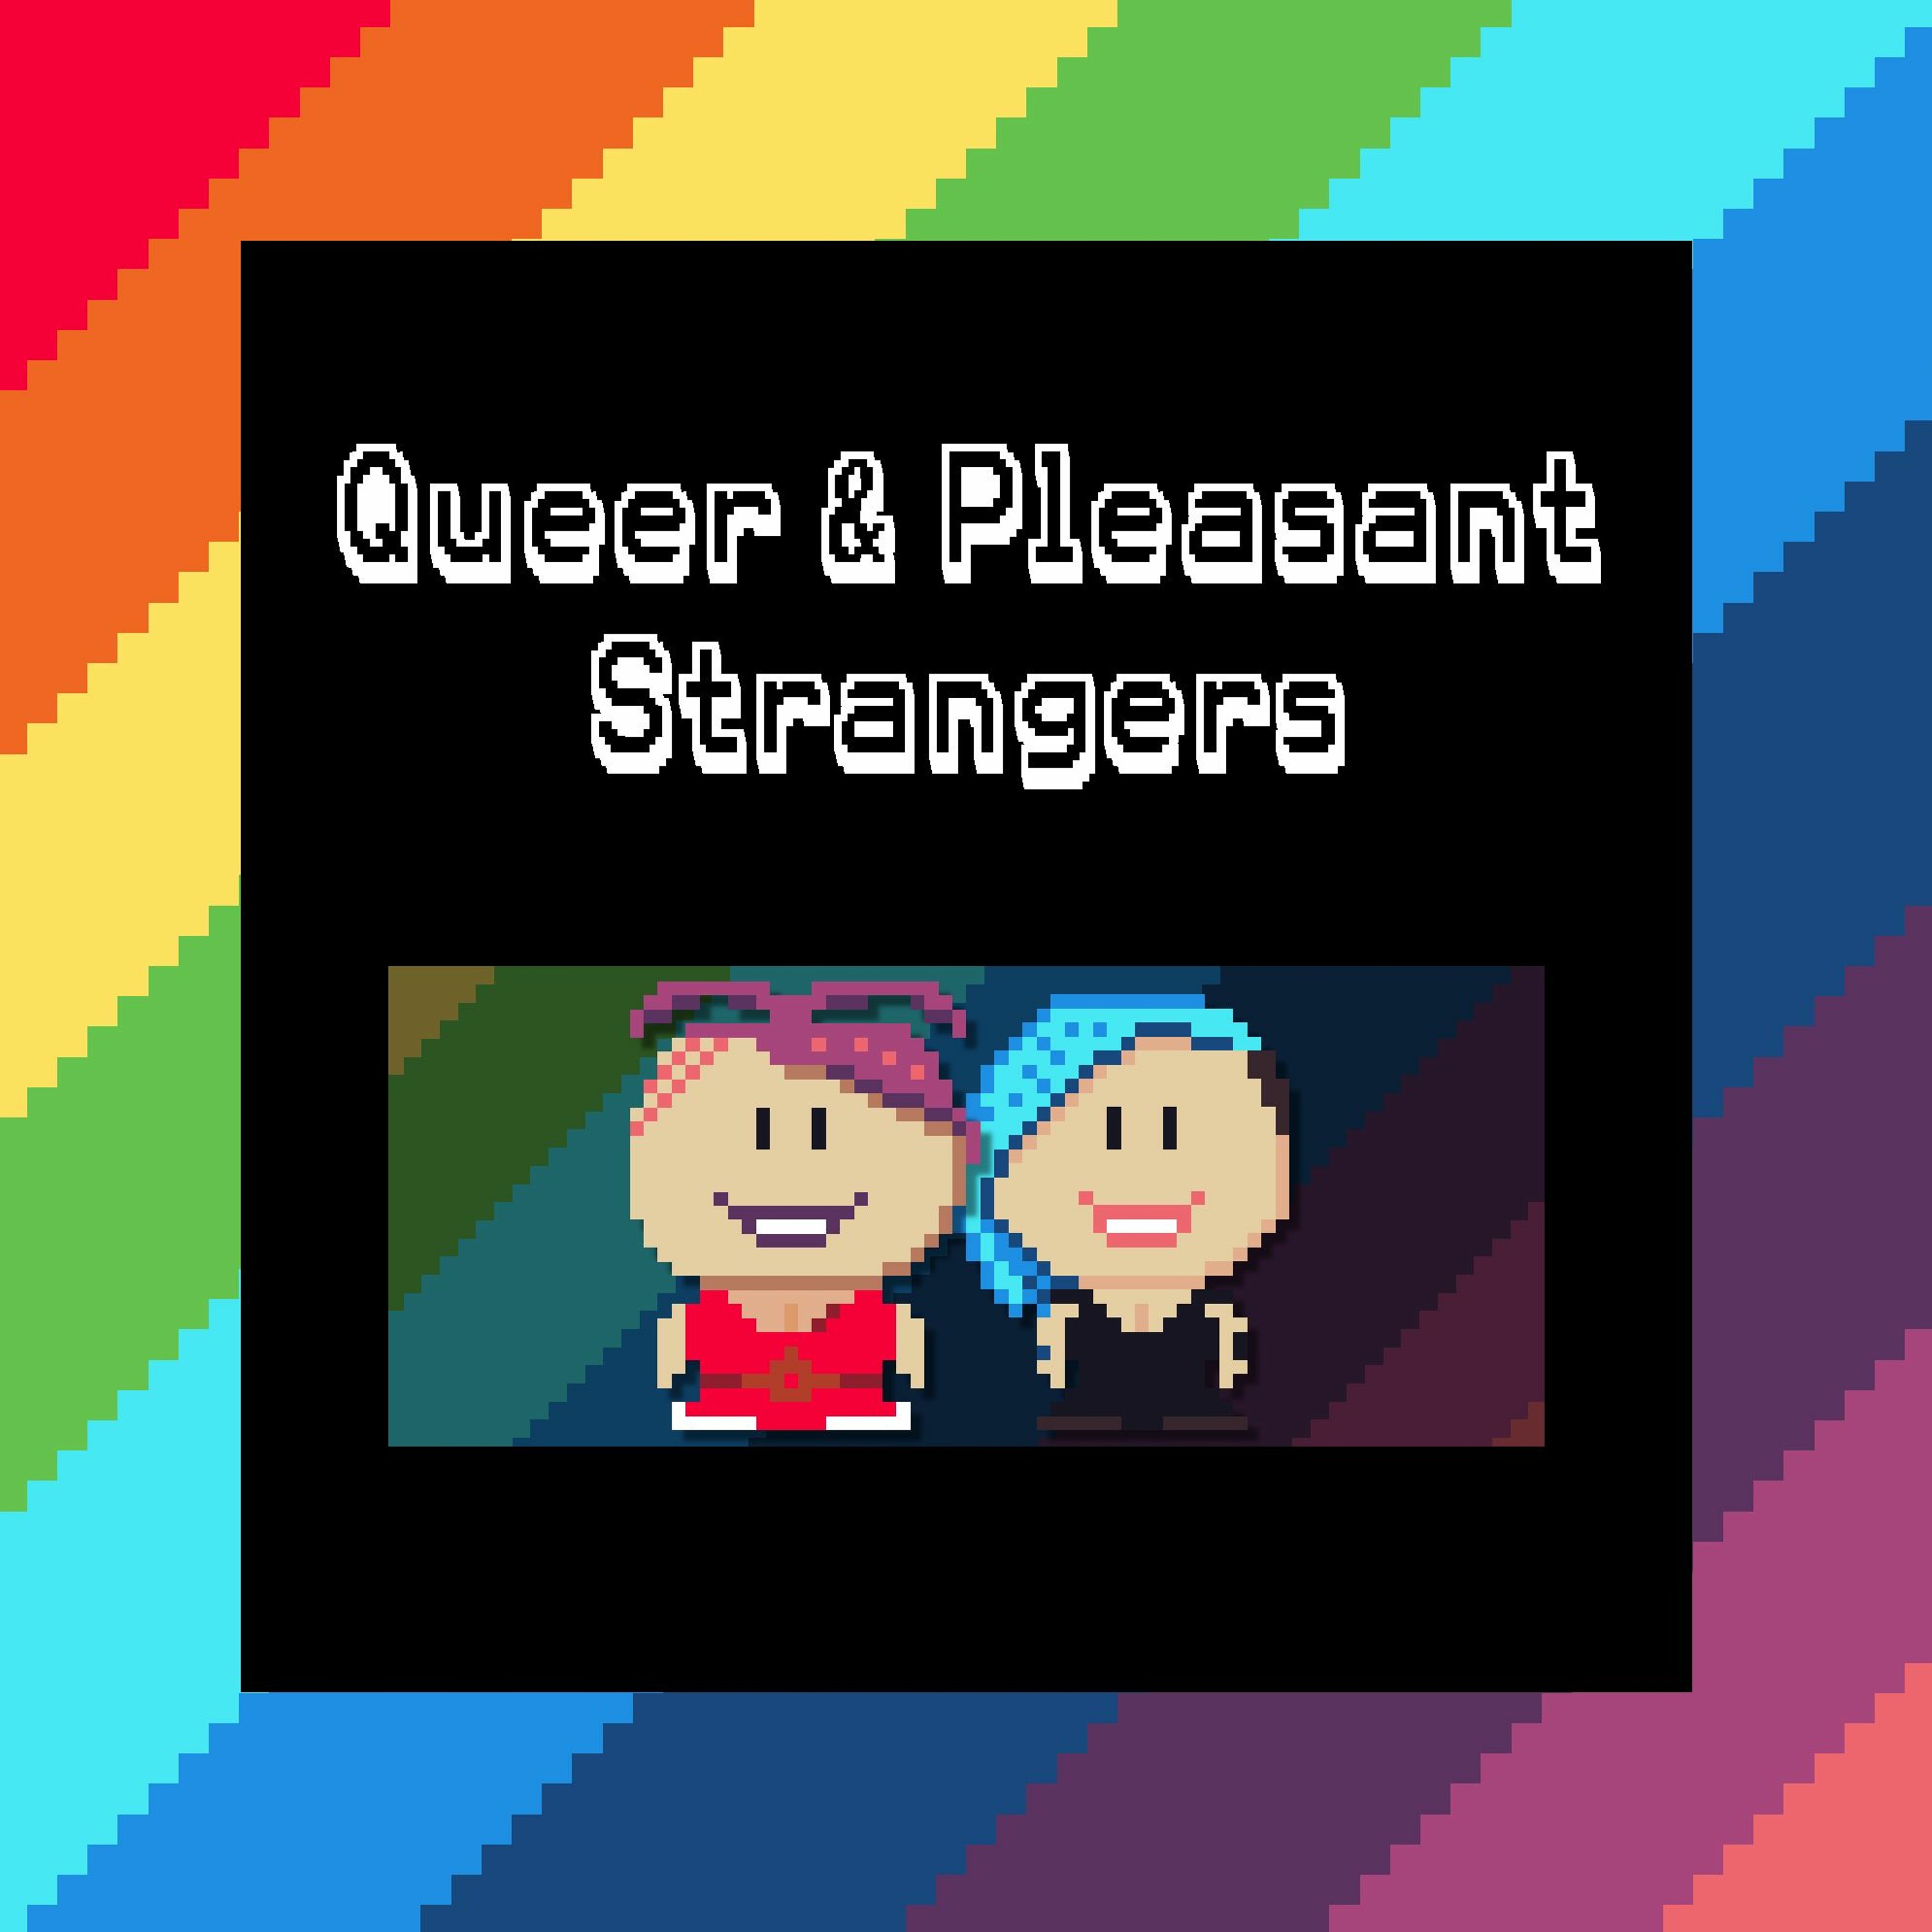 Queer & Pleasant Strangers - Original Bottom Action